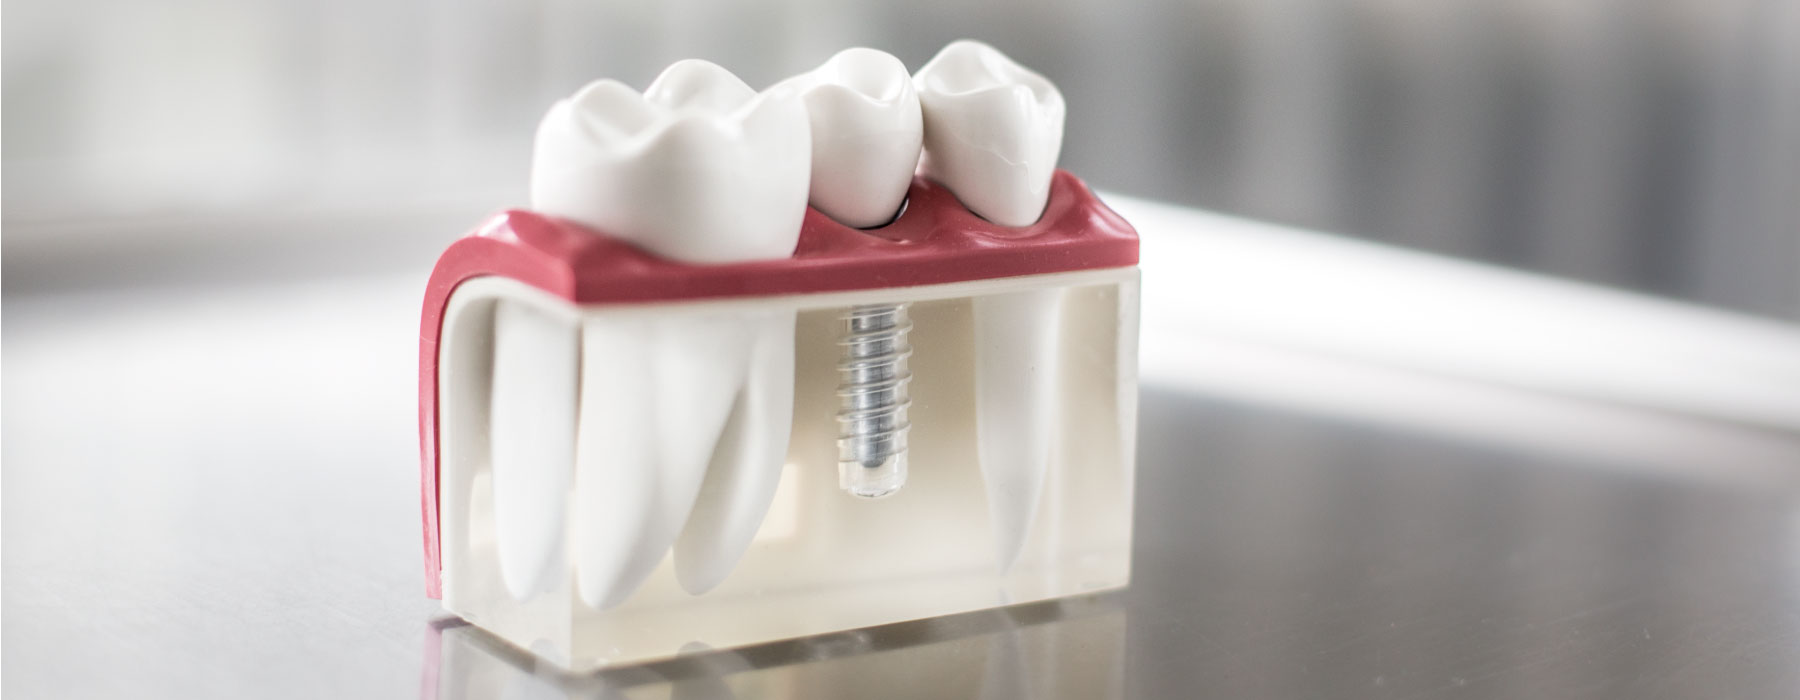 Modell eines Zahnimplantats 